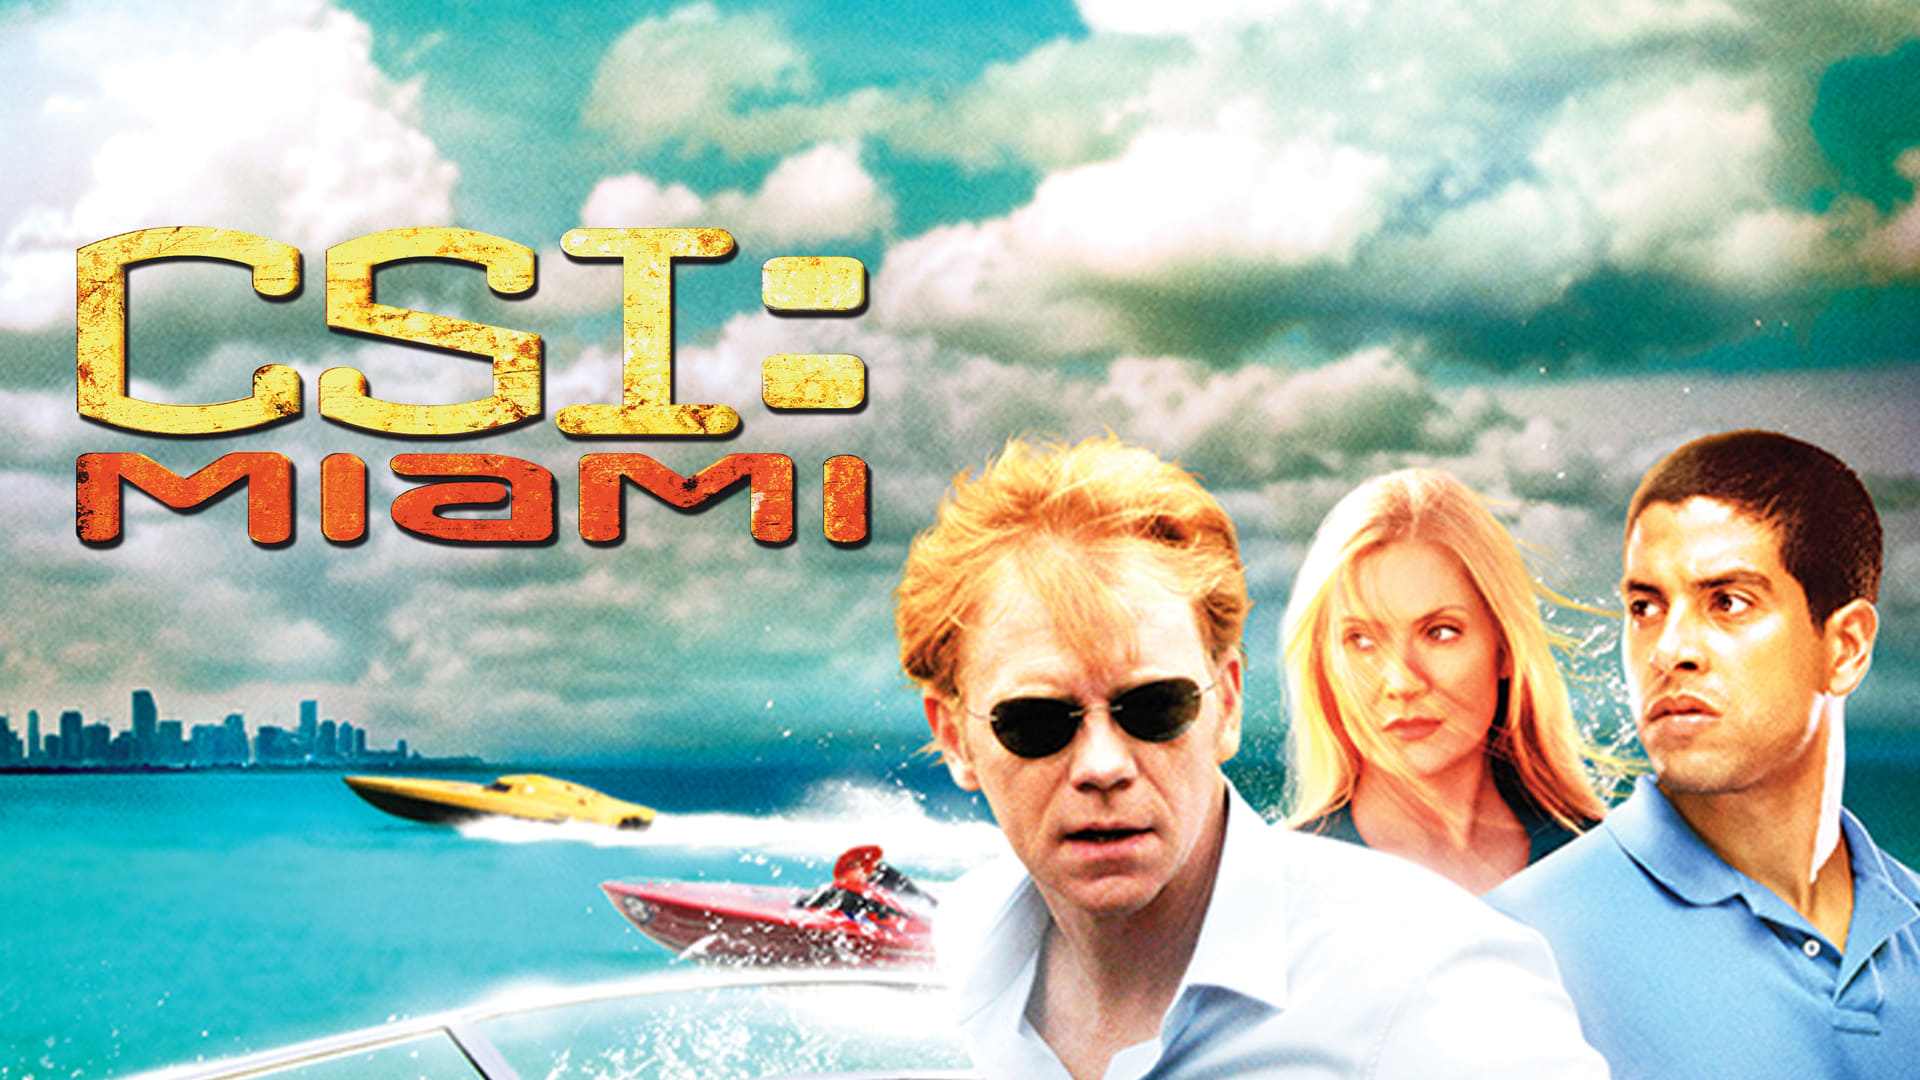 CSI Miami - Season 10 Episode 18